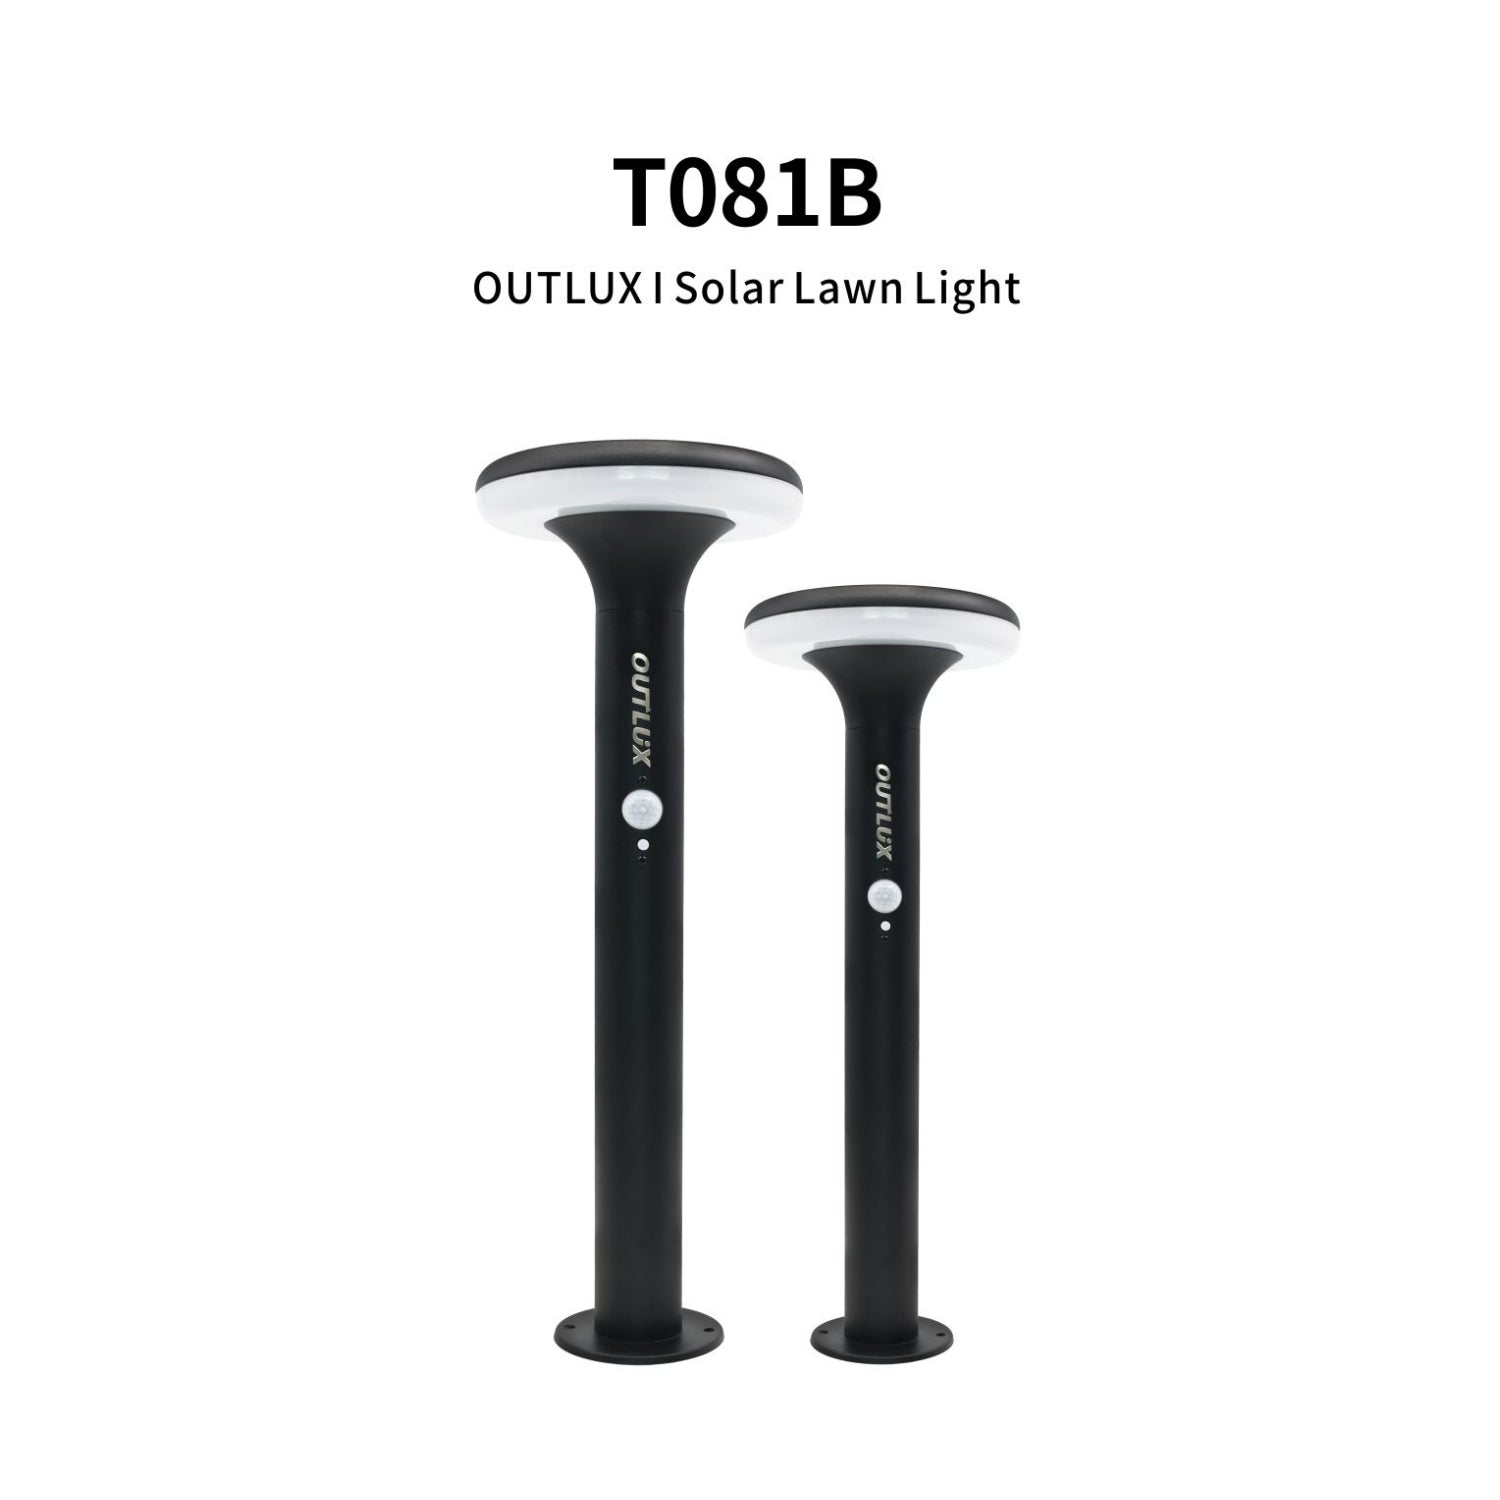 Outlux Solar Garden Lights - T081B